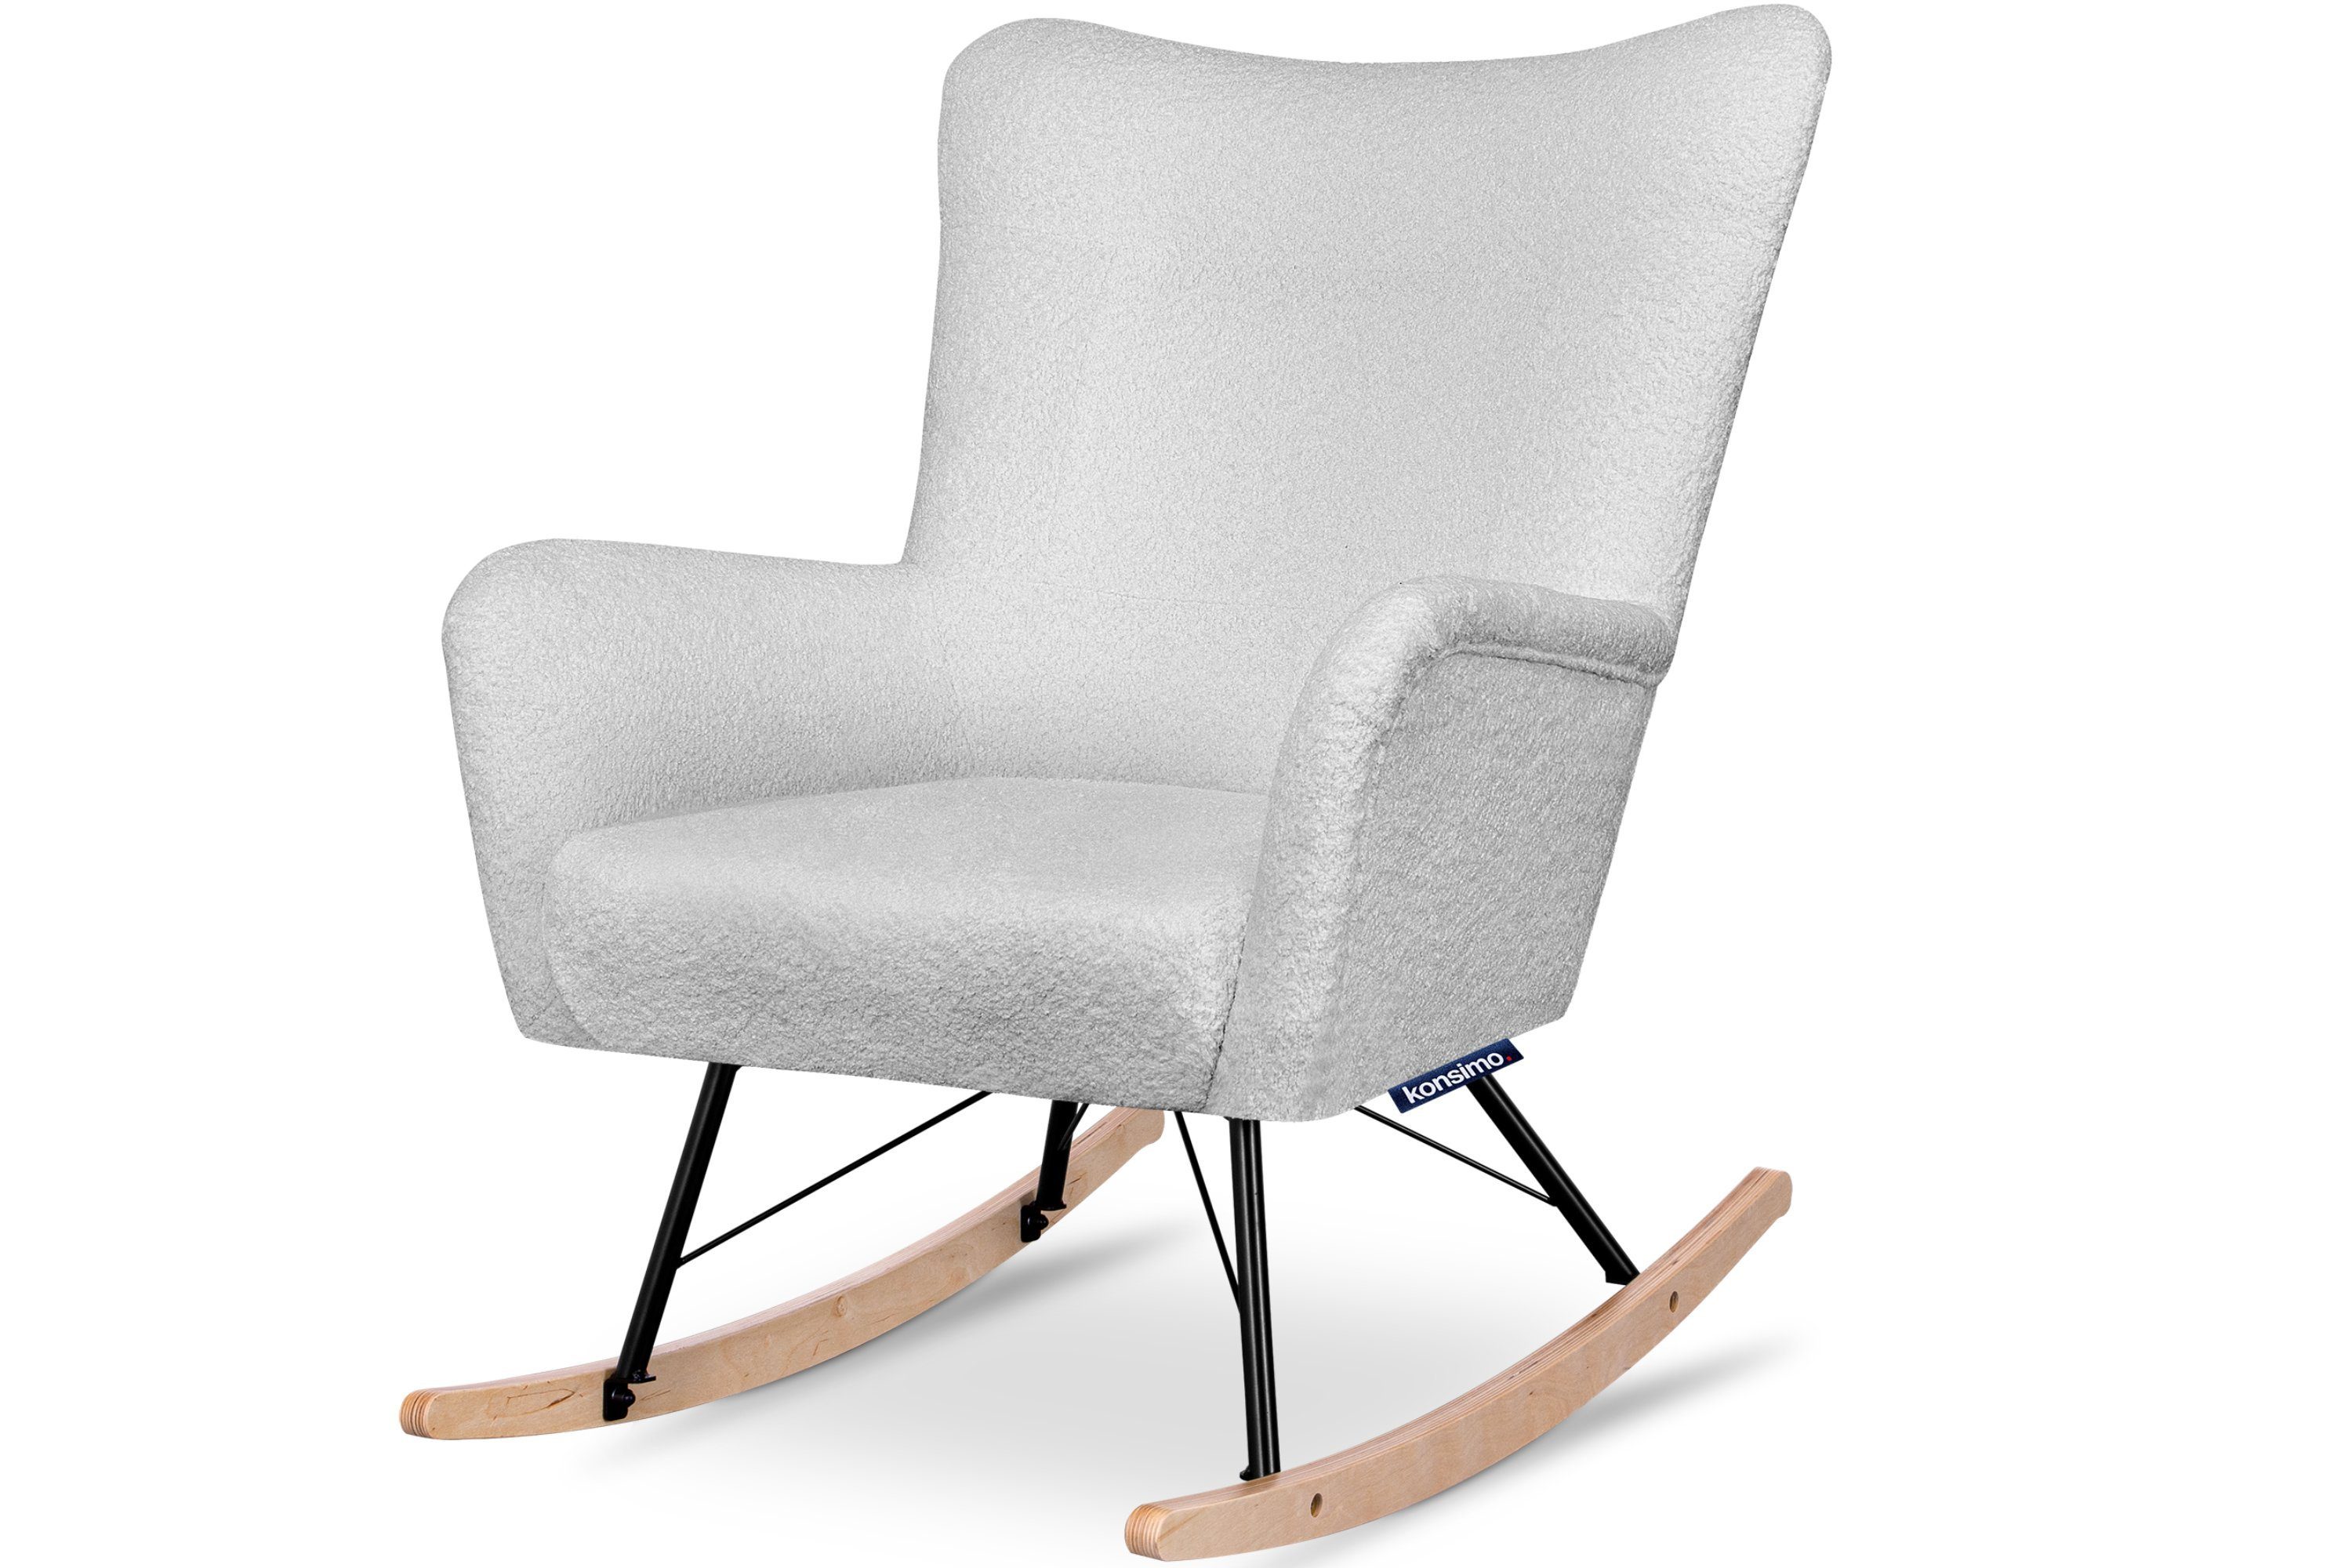 Konsimo Schaukelsessel ADDUCTI Stillsessel, breiter Sitz für mehr Komfort, ein Schaukelstuhl für jeden Stil, Hergestellt in EU hellgrau | hellgrau